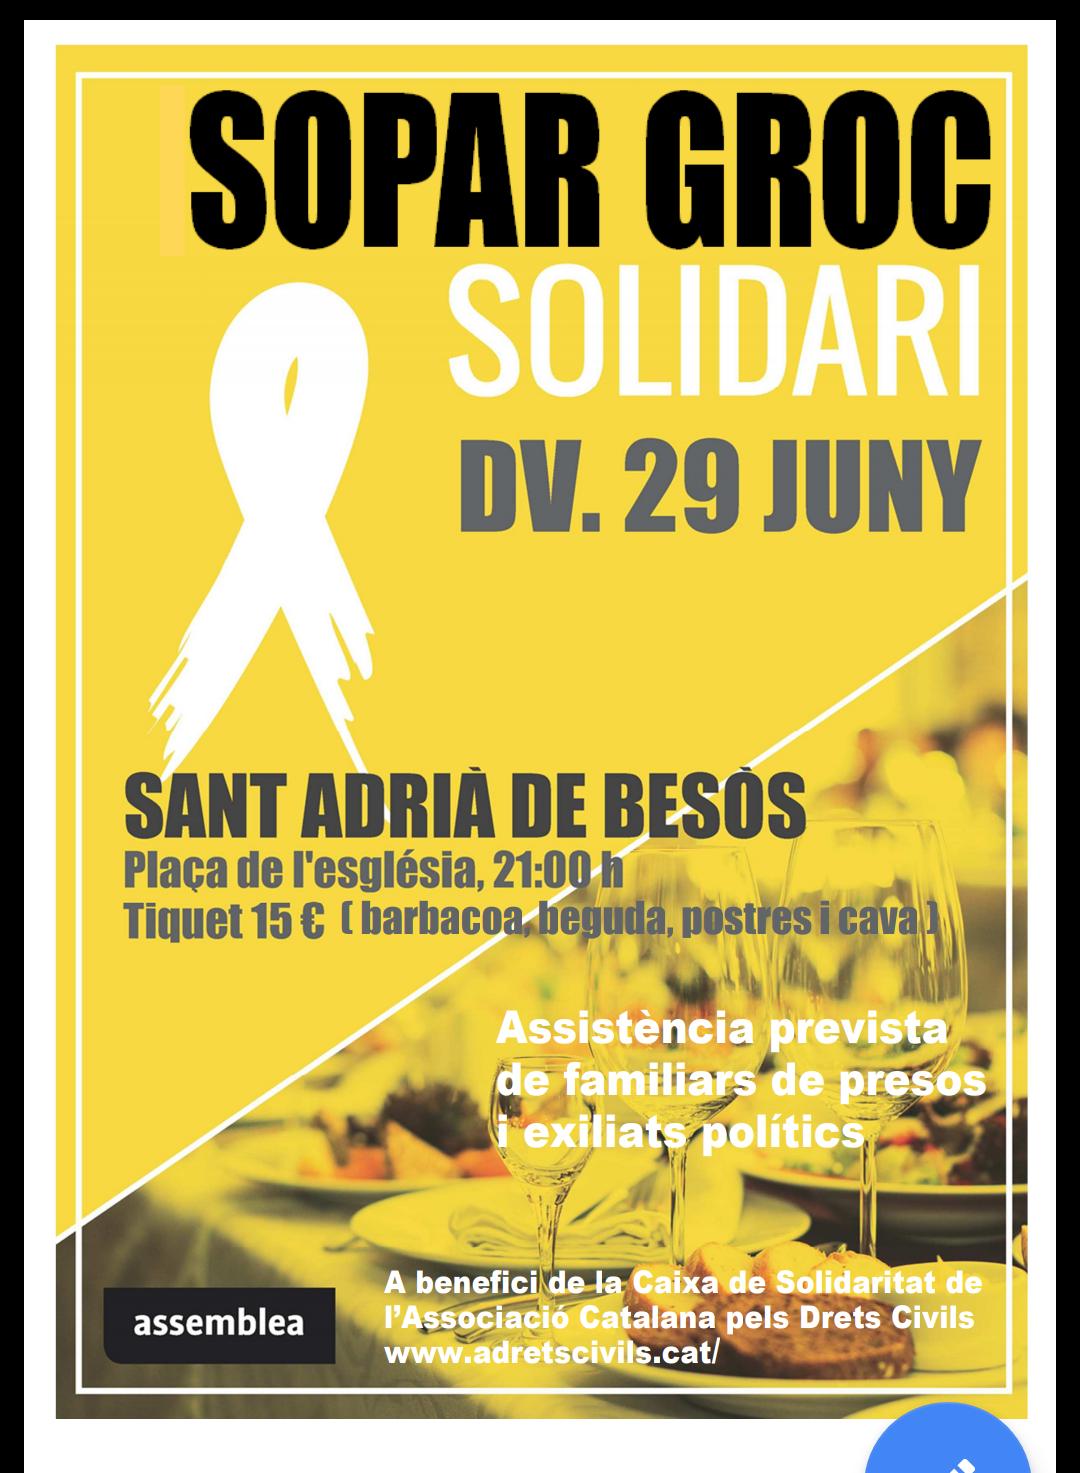 Sant Adrià de Besos - Sopar groc solidari